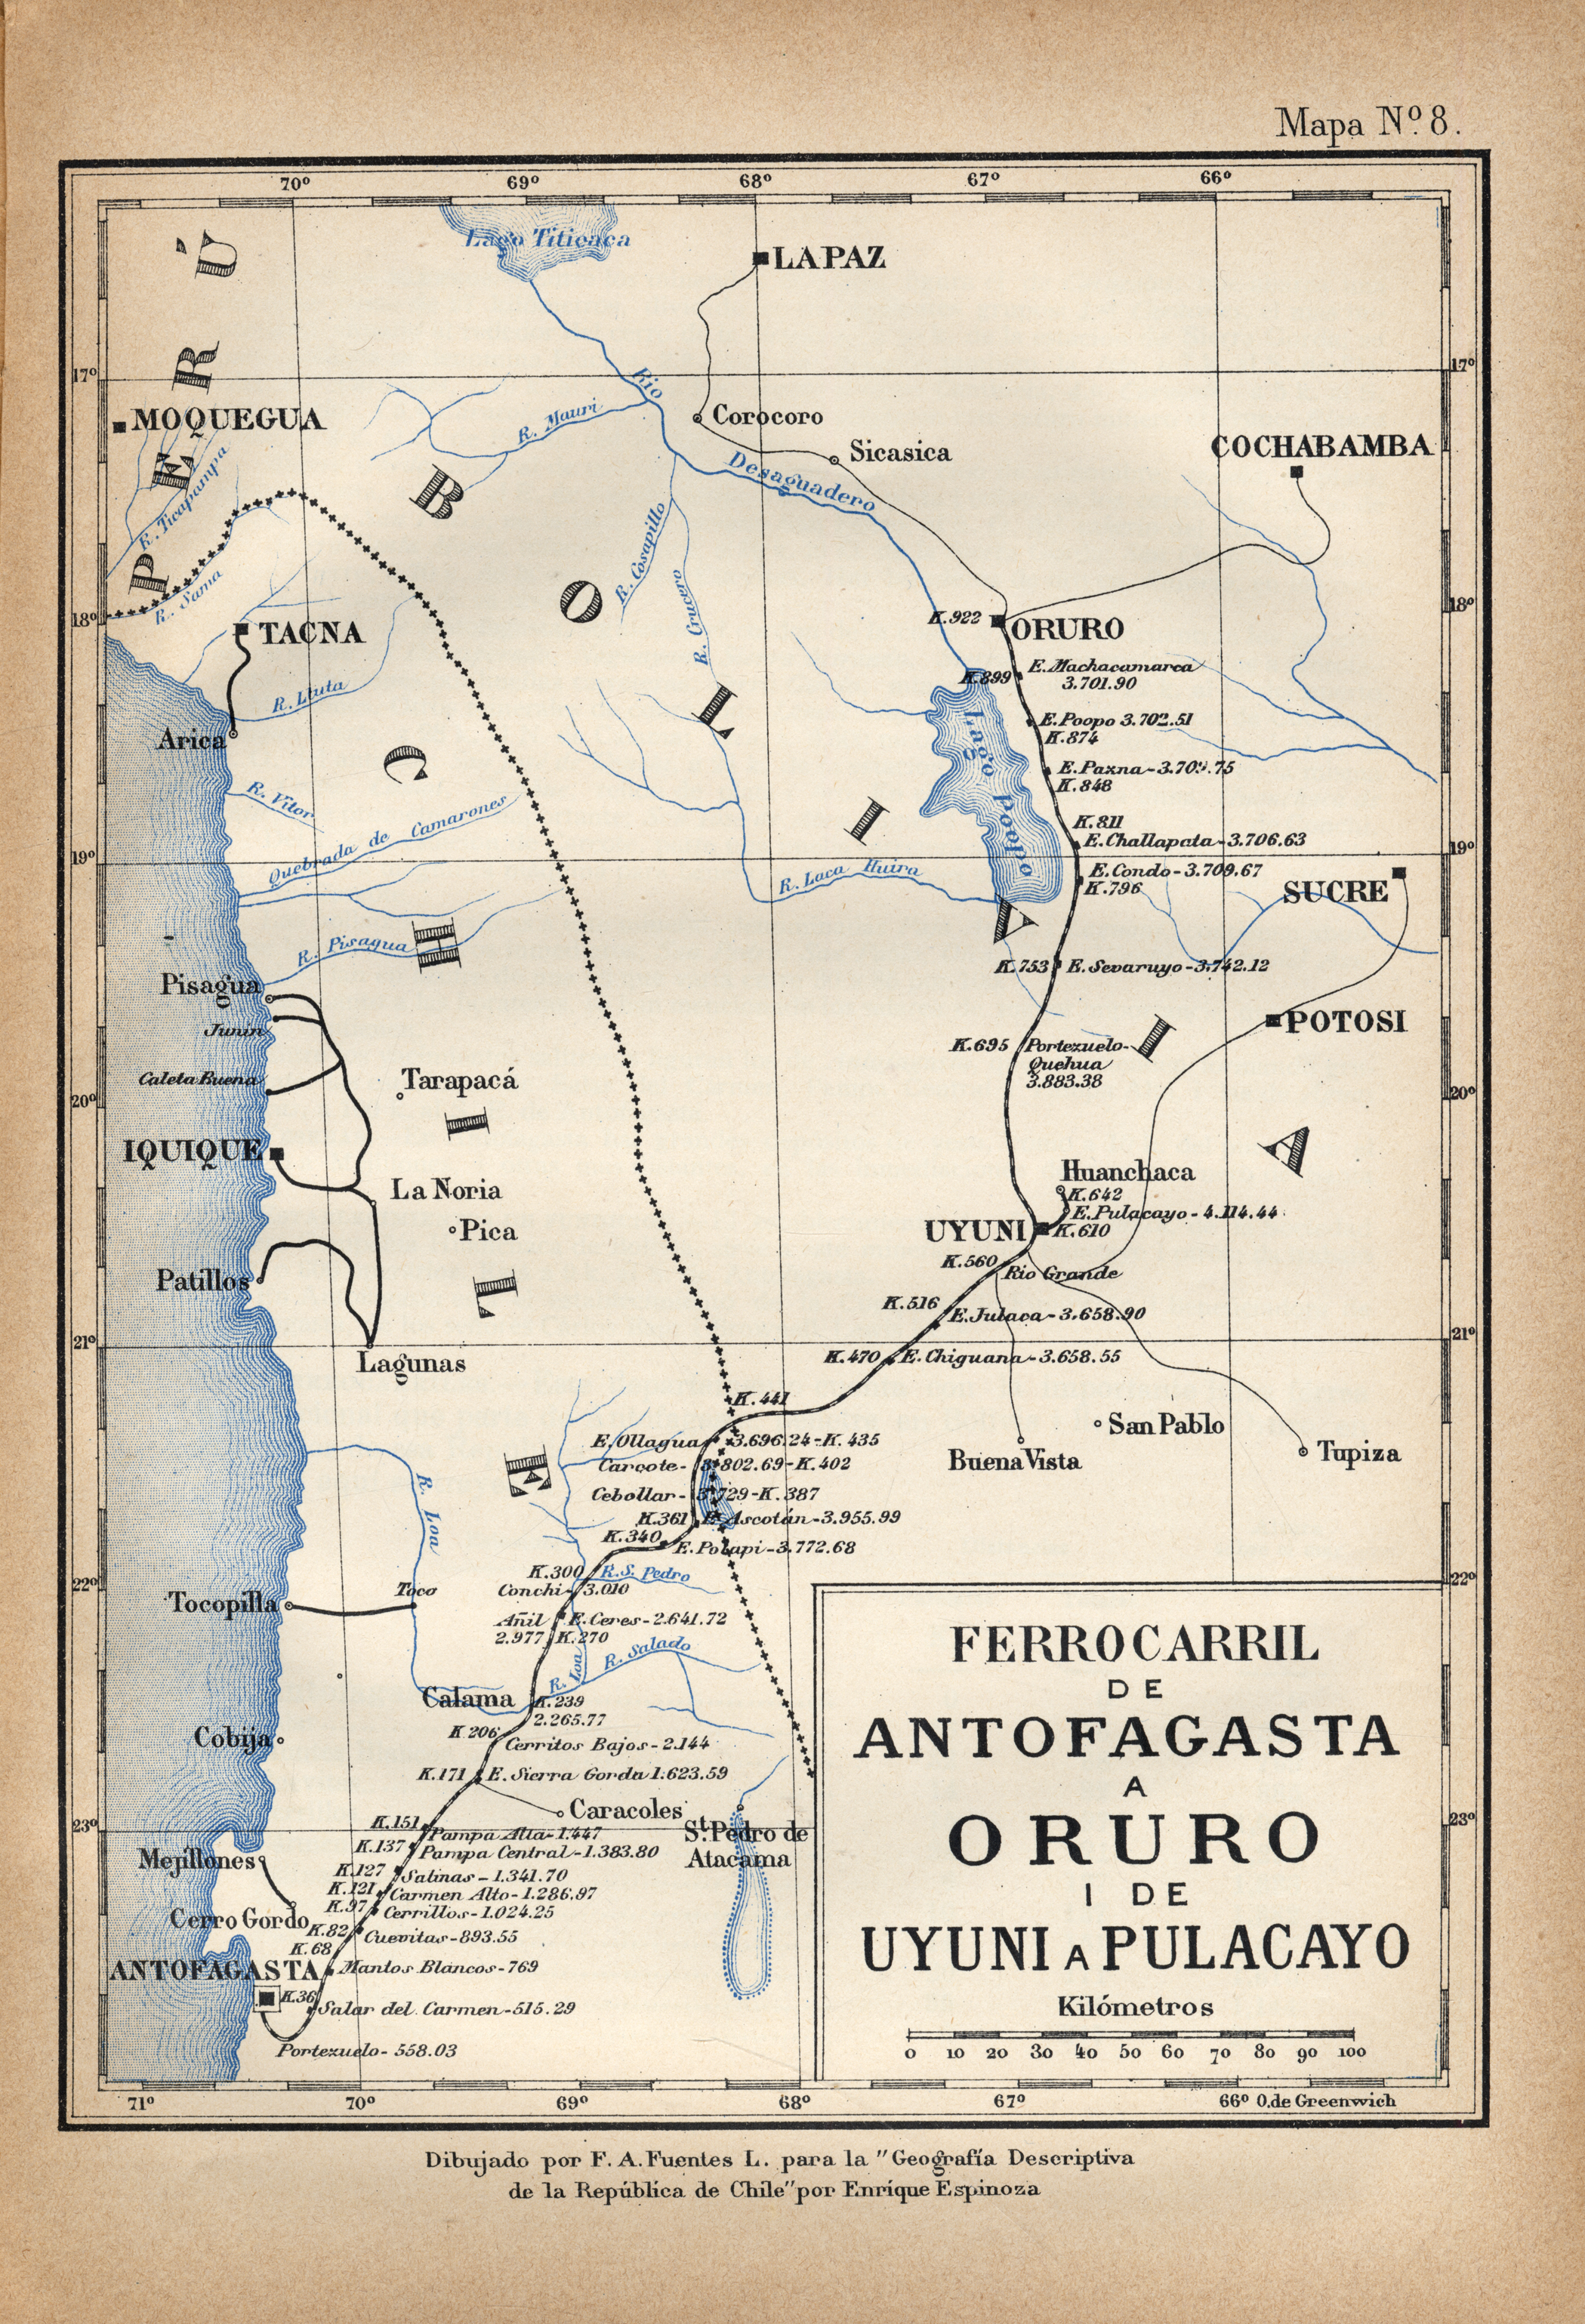 Ferrocarril de Antofagasta a Oruro i de Uyuno a Pulacayo, hacia 1885